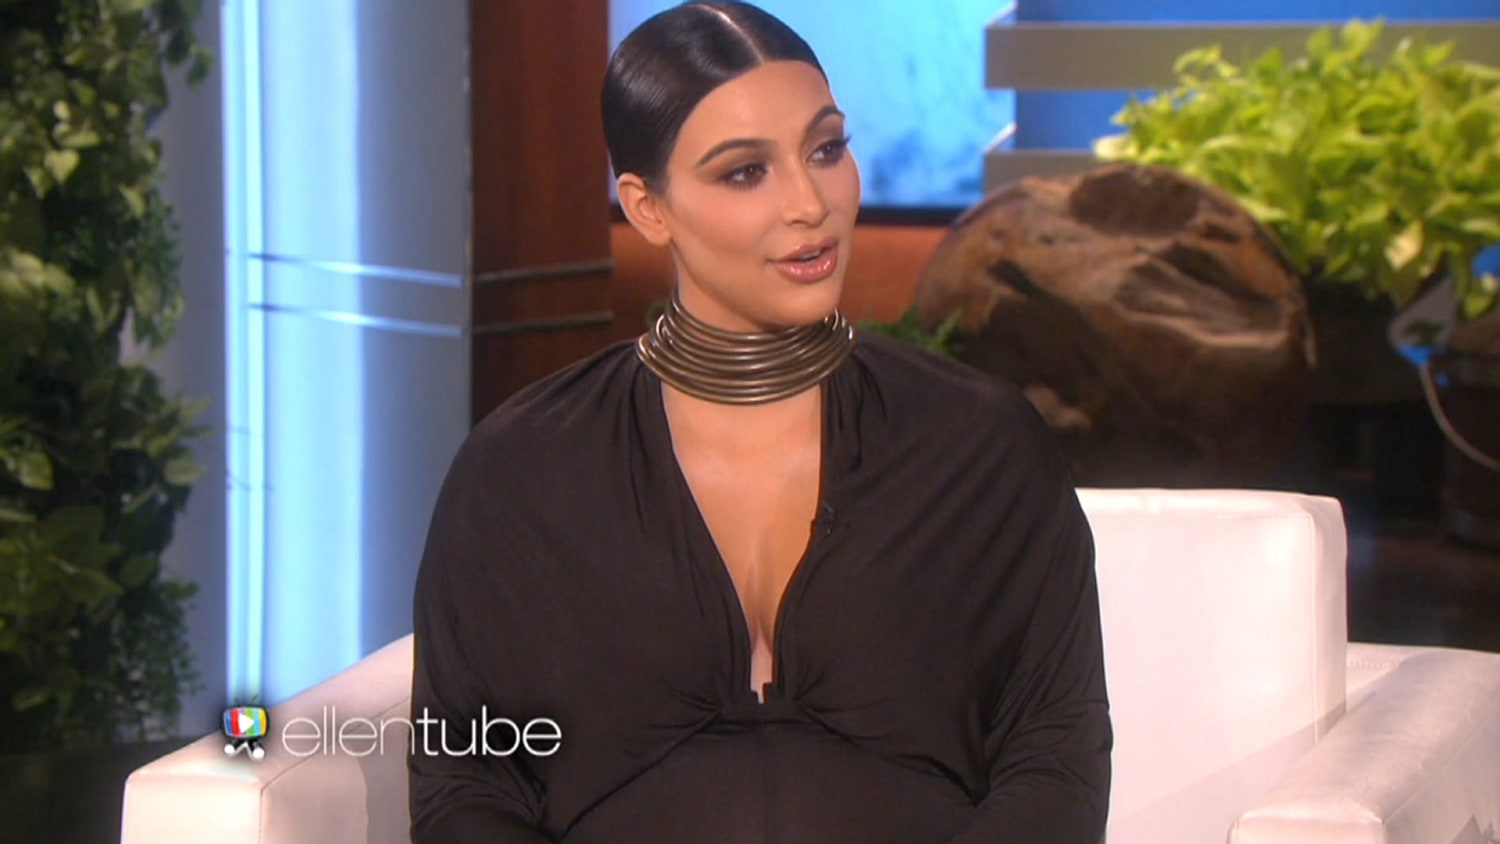 Kardashian's 'Vogue' cover sparks backlash